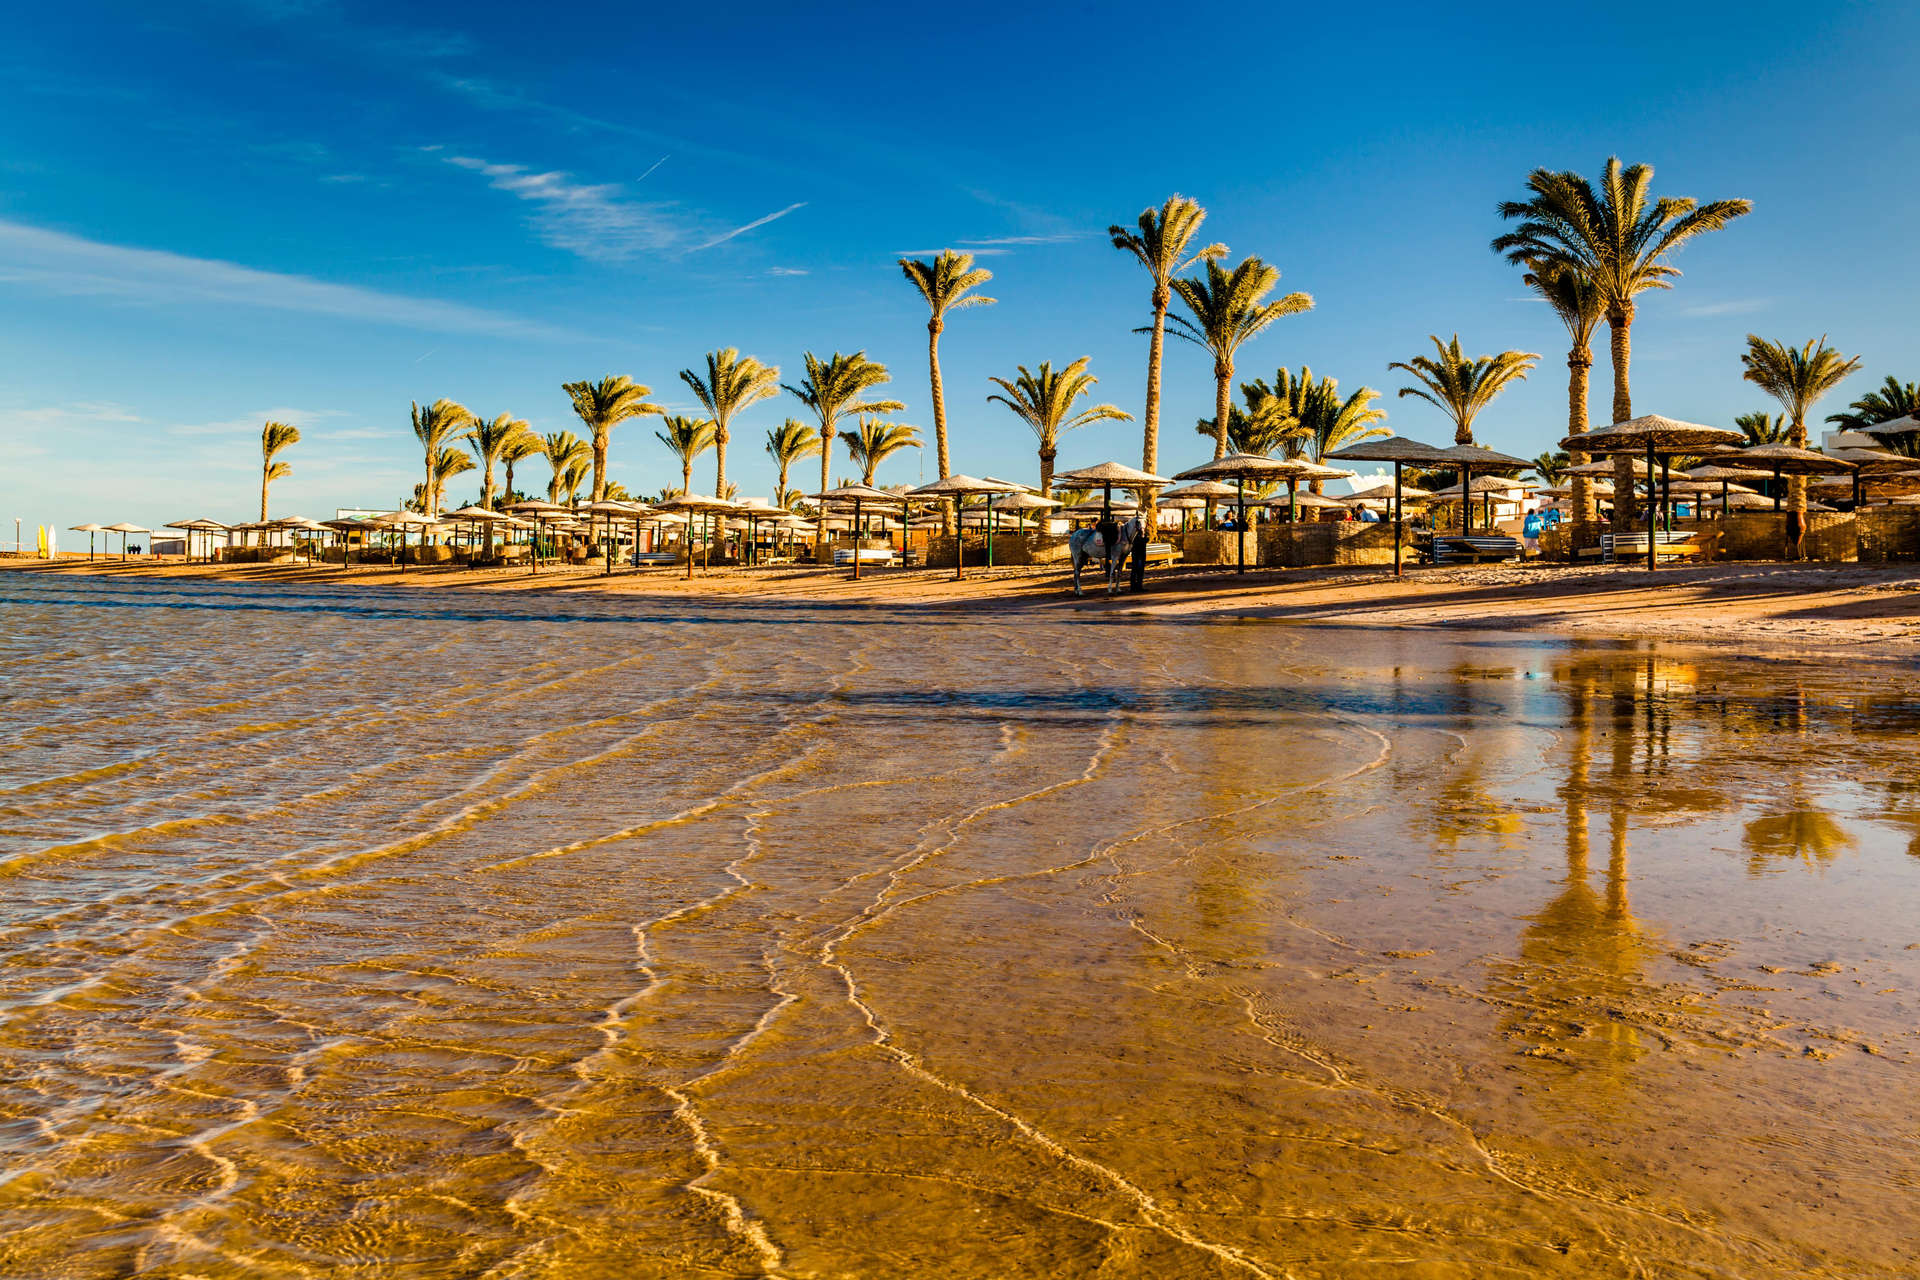 Egypt's Red Sea coast